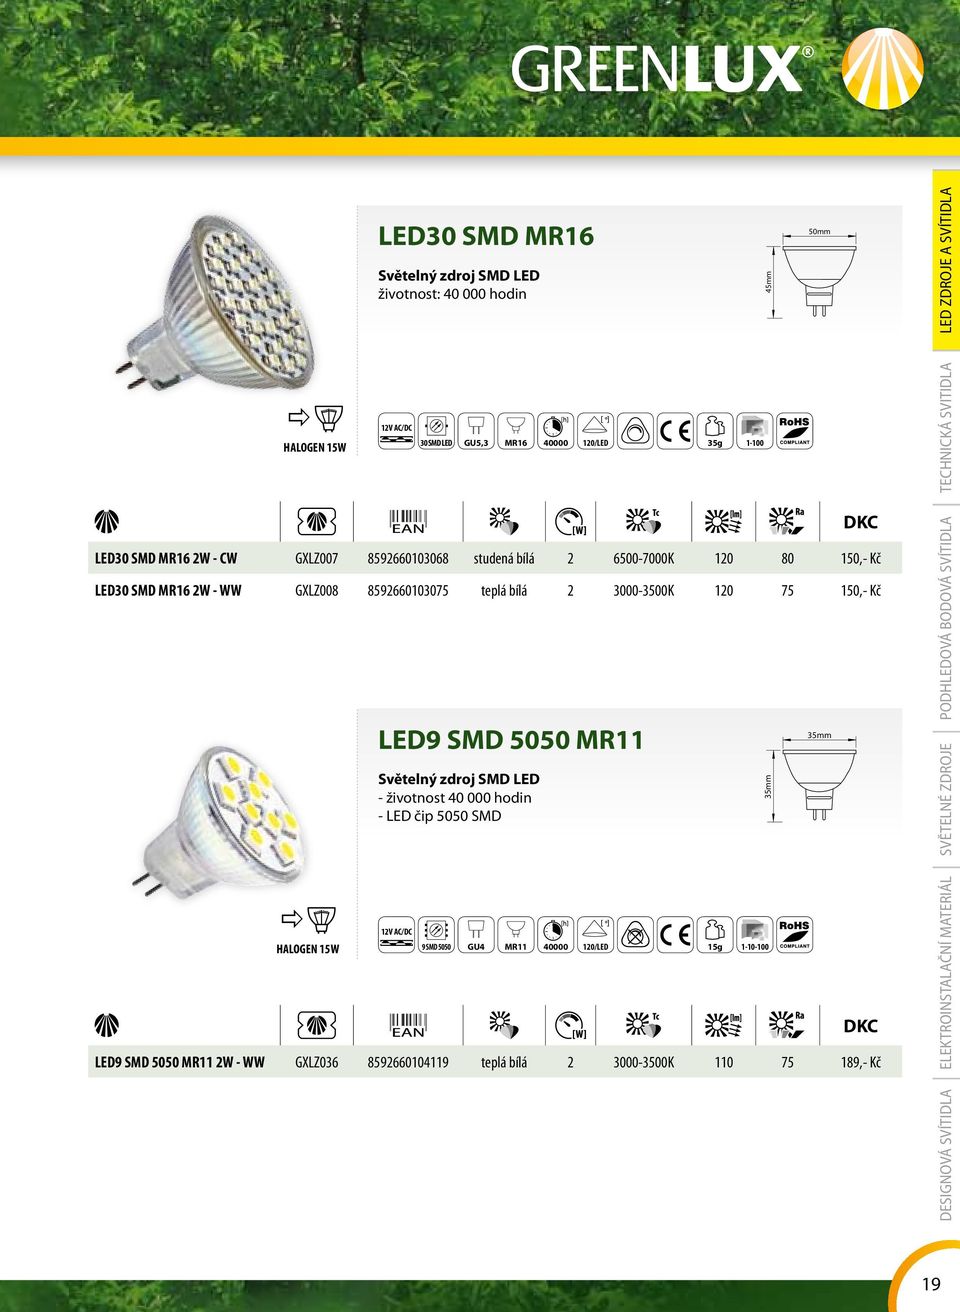 Světelný zdroj SMD LED - životnost 40 000 hodin - LED čip 5050 SMD 9 SMD 5050 GU4 MR11 40000 120/LED 15g 1-10-100 LED9 SMD 5050 MR11 2W - WW GXLZ036 8592660104119 teplá bílá